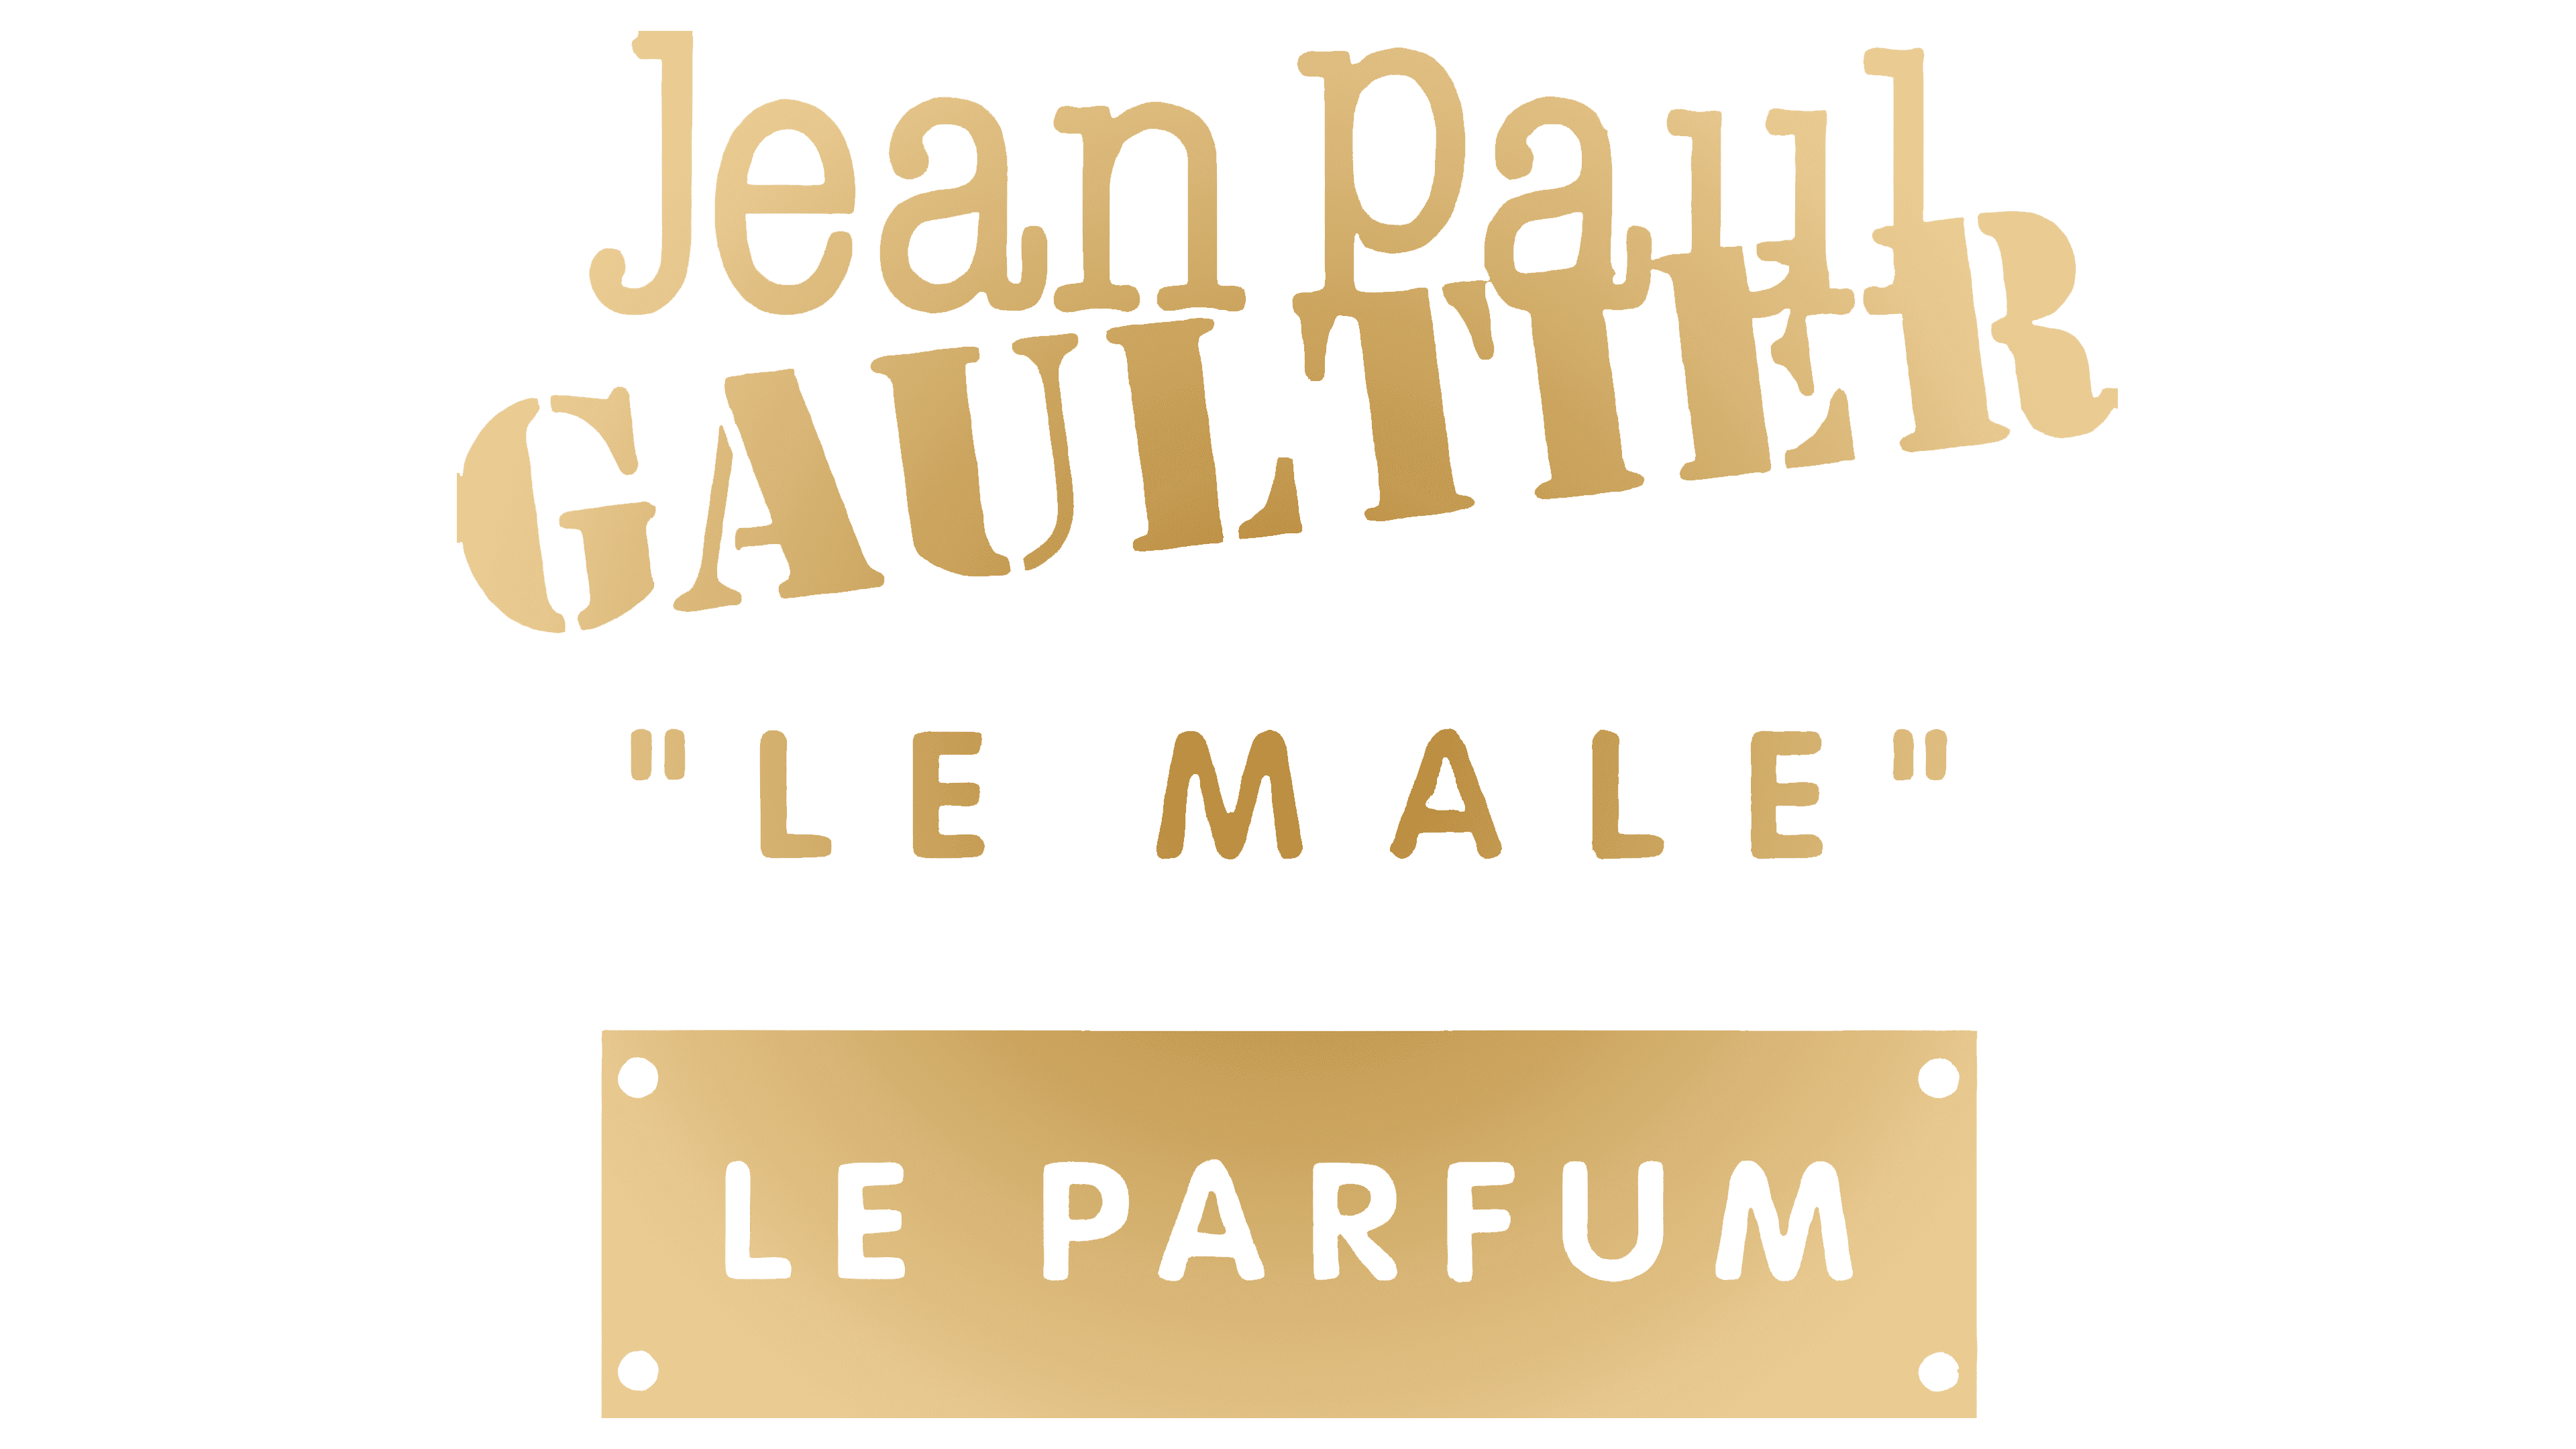 Jean Paul Gaultier Logo